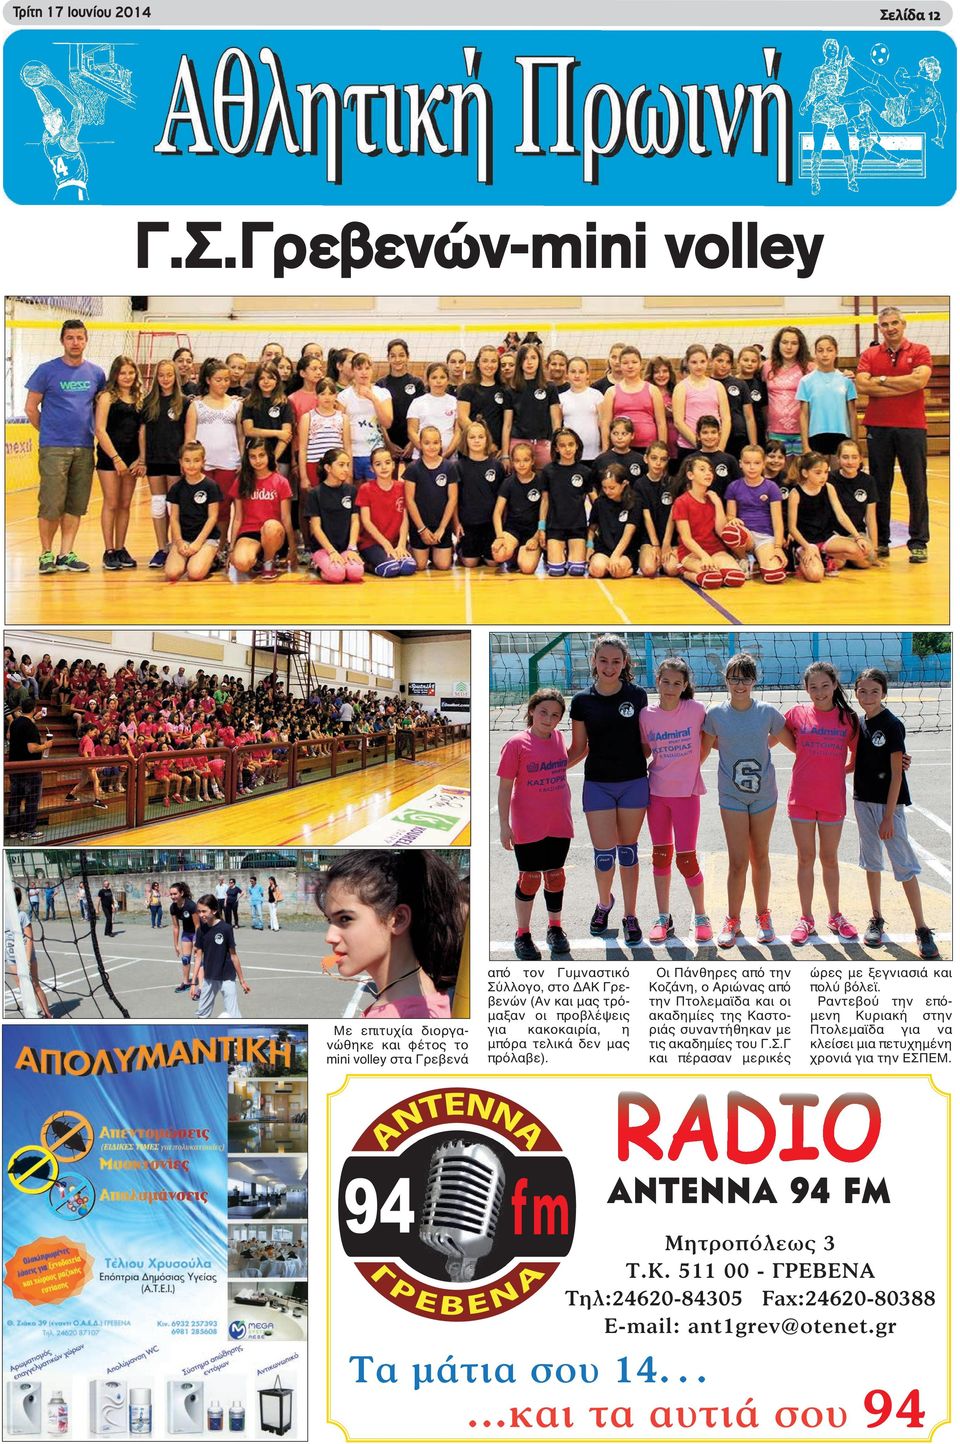 Γρεβενών-mini volley Με επιτυχία διοργανώθηκε και φέτος το mini volley στα Γρεβενά από τον Γυμναστικό Σύλλογο, στο ΔΑΚ Γρεβενών (Αν και μας τρόμαξαν οι προβλέψεις